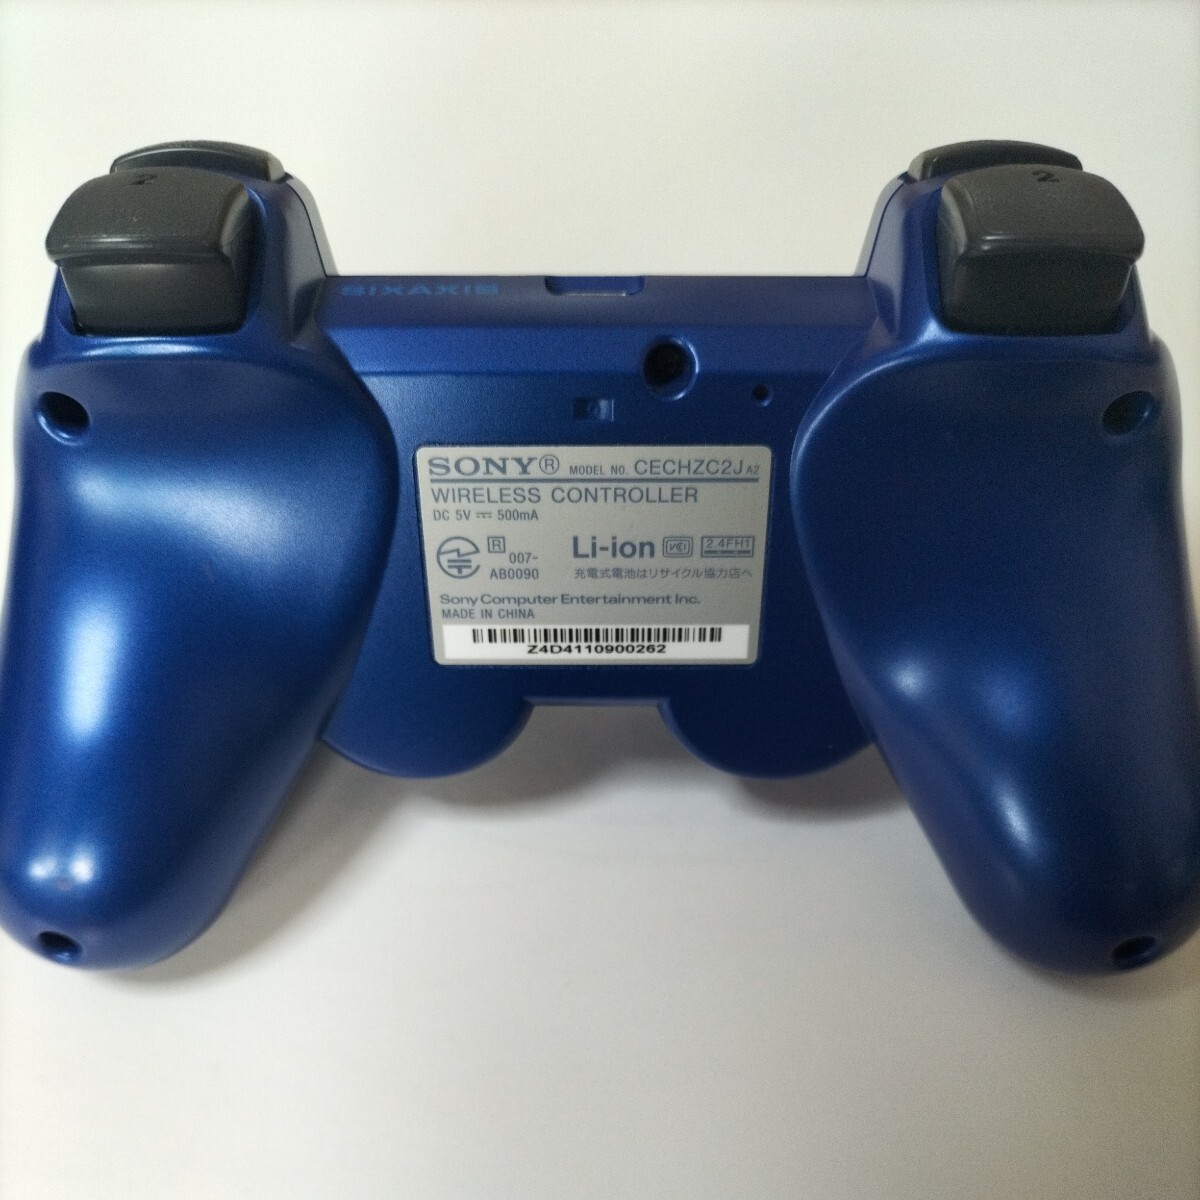 [ разборка чистка ][ ошибка работа меры settled ]PS3 PlayStation 3 DUALSHOCK3 SONY контроллер оригинальный товар рабочее состояние подтверждено техническое обслуживание settled 43